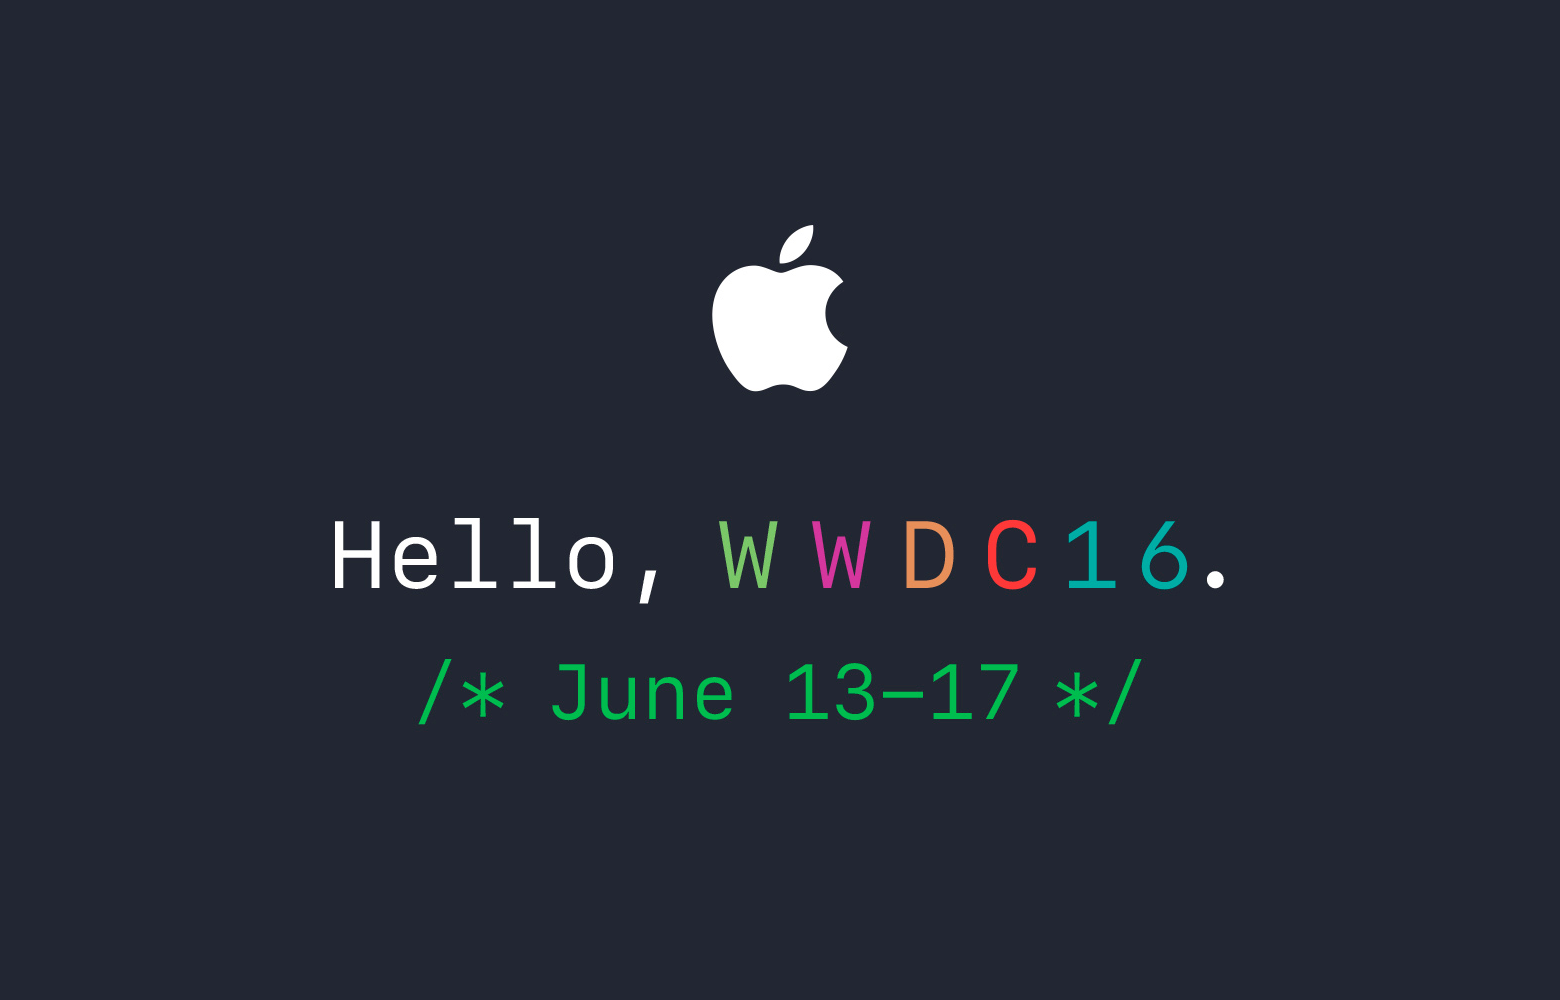 wwdc-2016-empieza-13-junio-que-presentara-apple